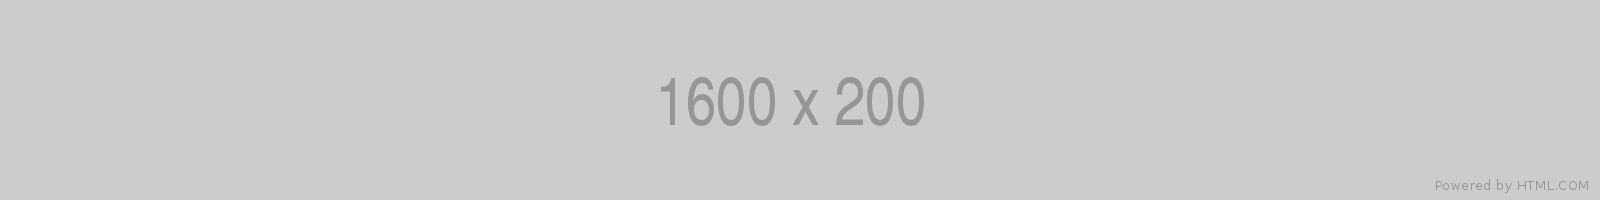 1600x200